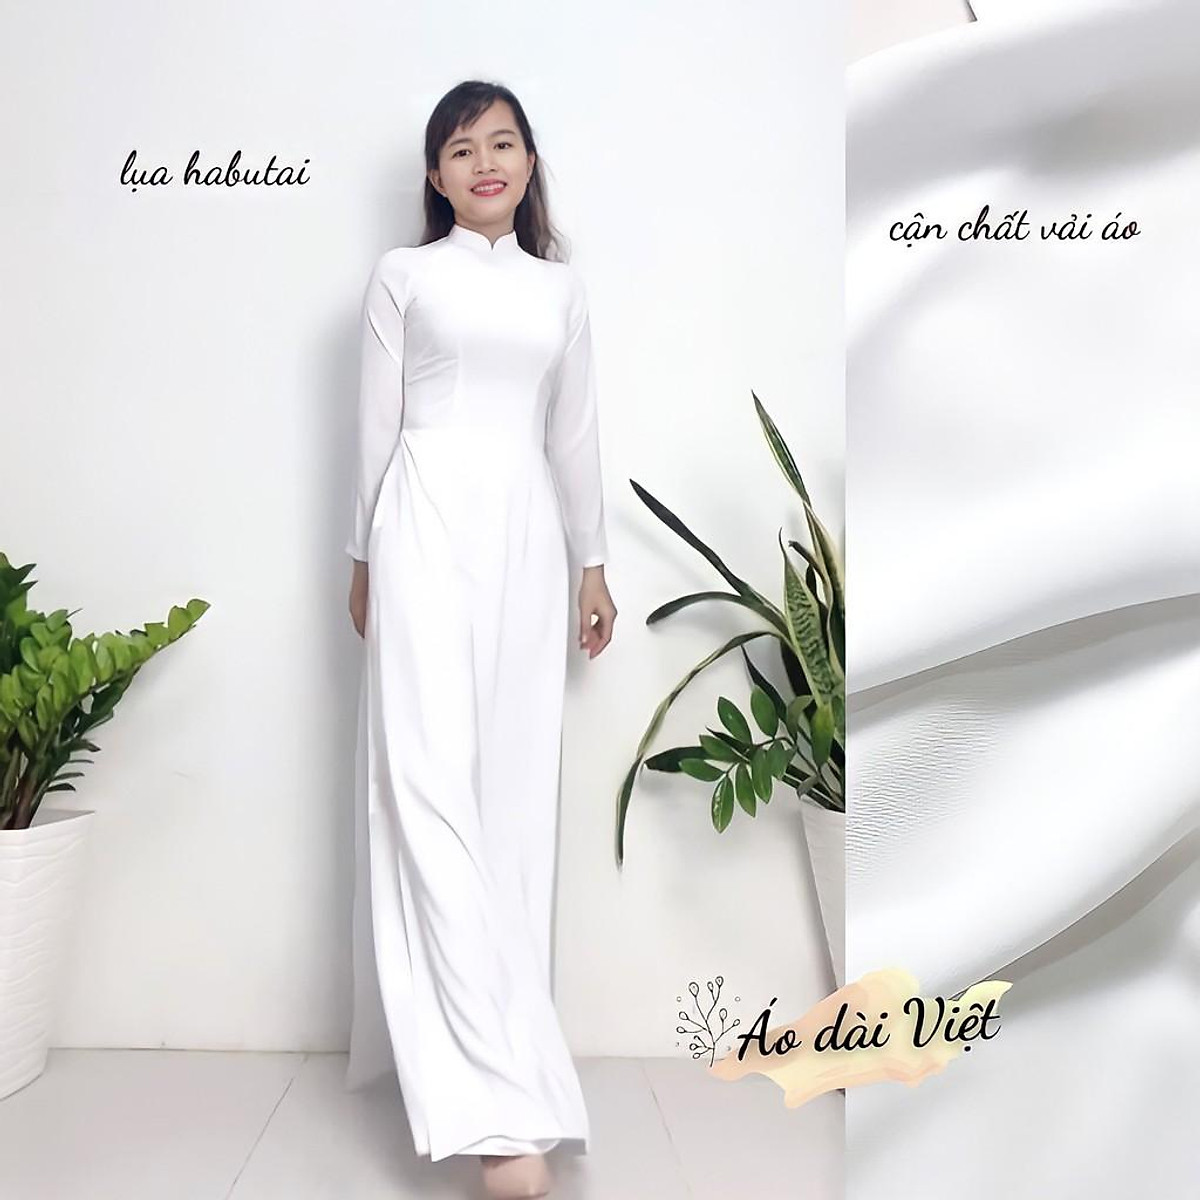 Áo dài trắng học sinh là biểu tượng của sự thanh lịch và tình cảm yêu nước của các em học sinh. Trang phục này là sự kết hợp giữa truyền thống và hiện đại, tạo nét đặc trưng riêng cho phong cách thời trang của học sinh Việt Nam. Hãy cùng chiêm ngưỡng bức hình áo dài trắng học sinh xinh đẹp này để cảm nhận được sự thanh khiết và đằm thắm.